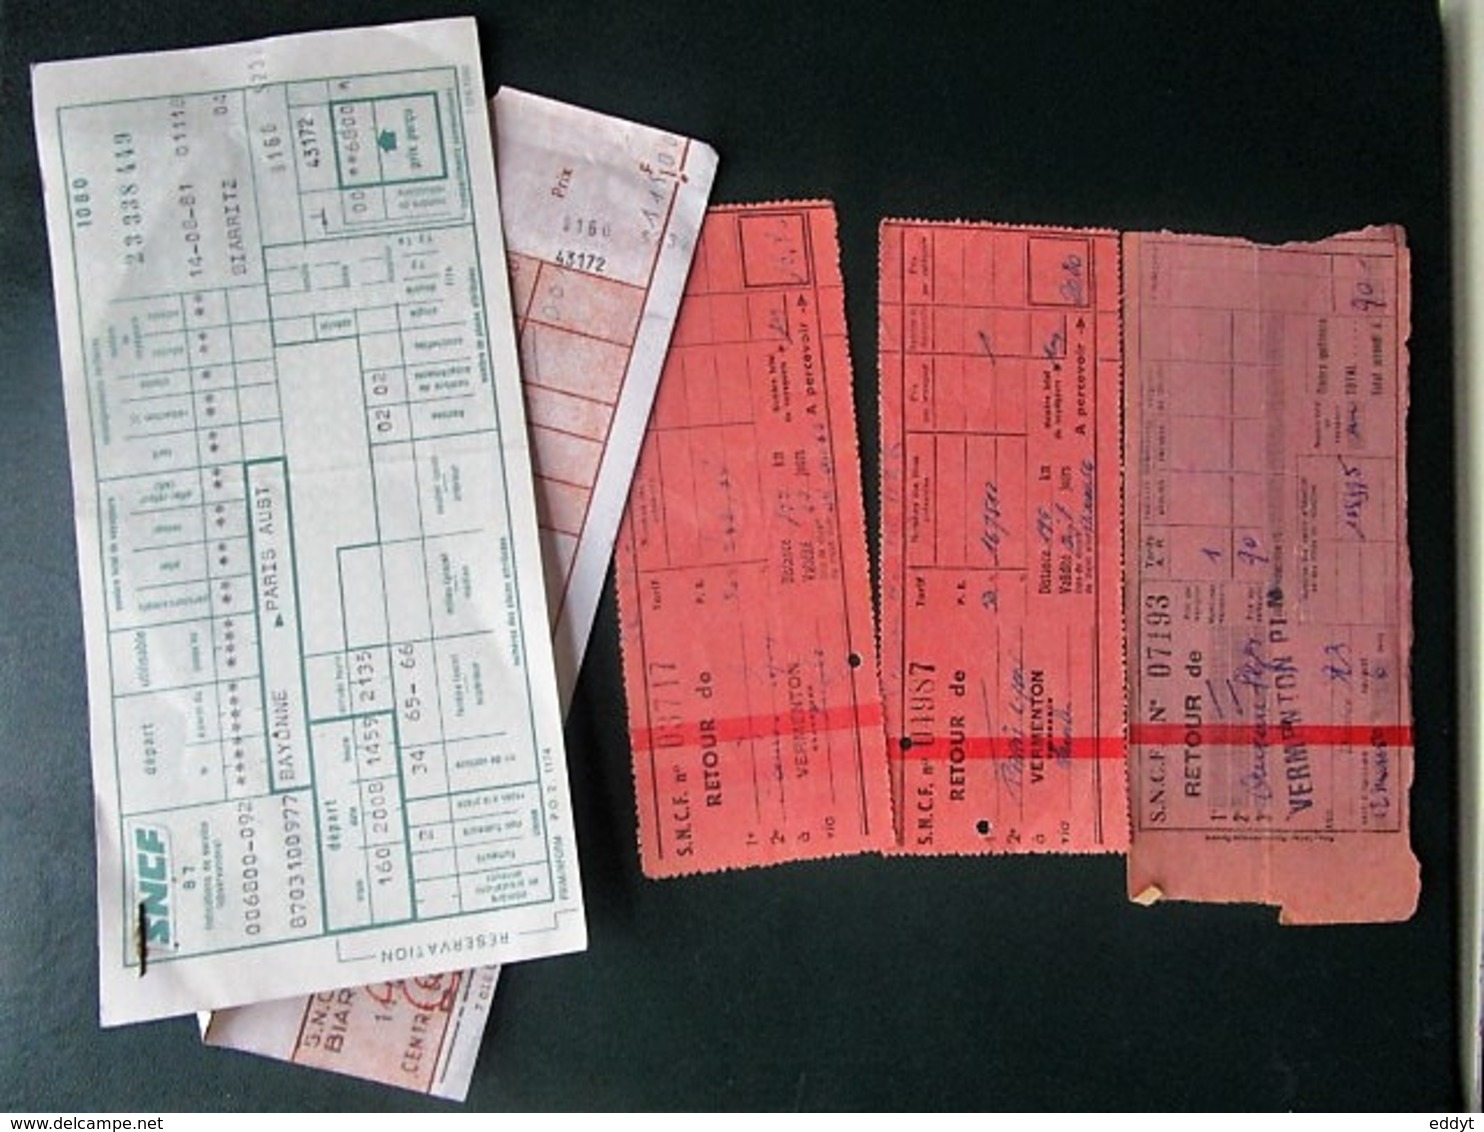 4 BILLETS Tickets De Train - S.N.C.F.  - France - Années 1981/ Et 3 Années 50/66-66 En Rose - World